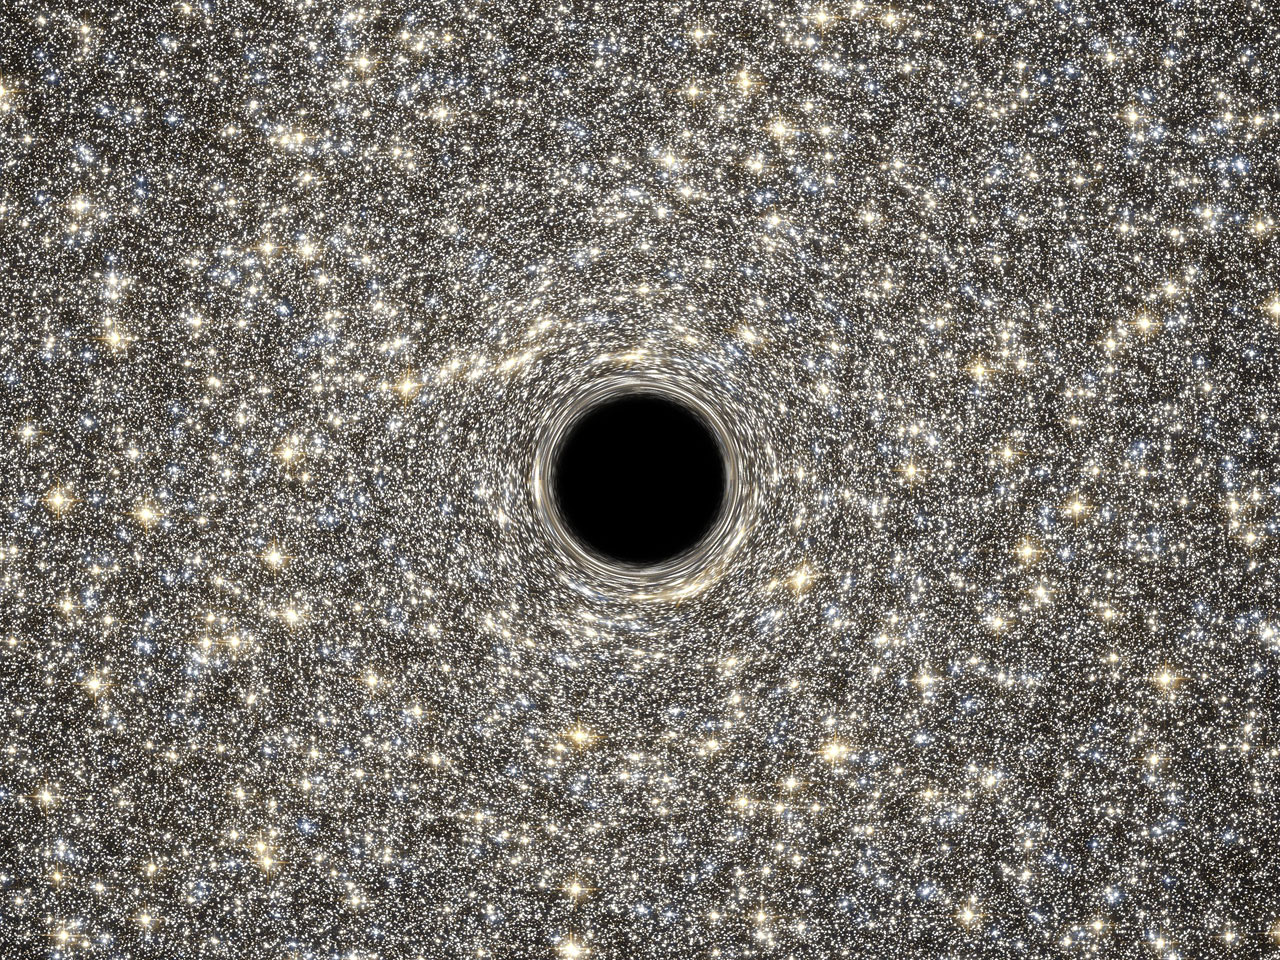 Cconcepción artística del agujero negro supermasivo en M60-UDC1 (NASA, ESA, D. Coe, G. Bacon -STScI-).